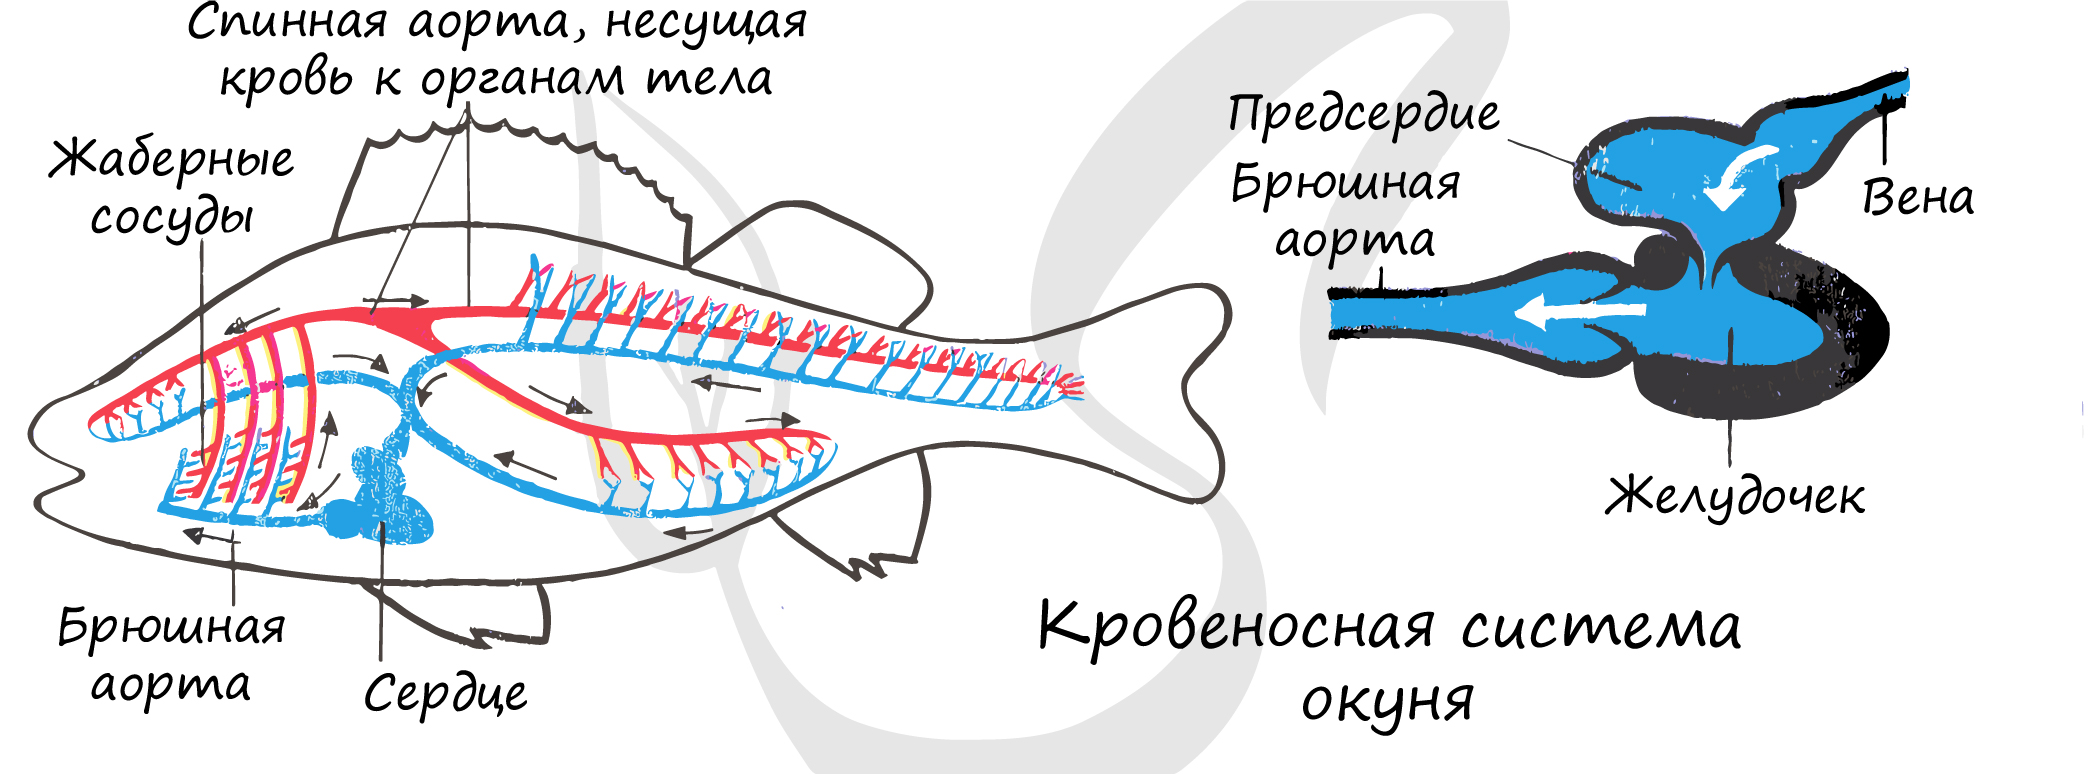 Особенности кровообращения рыб. Схема строения кровеносной системы костной рыбы. Кровеносная система рыб схема 7 класс. Внутреннее строение речного окуня кровеносная система. Кровеносная система у рыб представлена кровообращения.